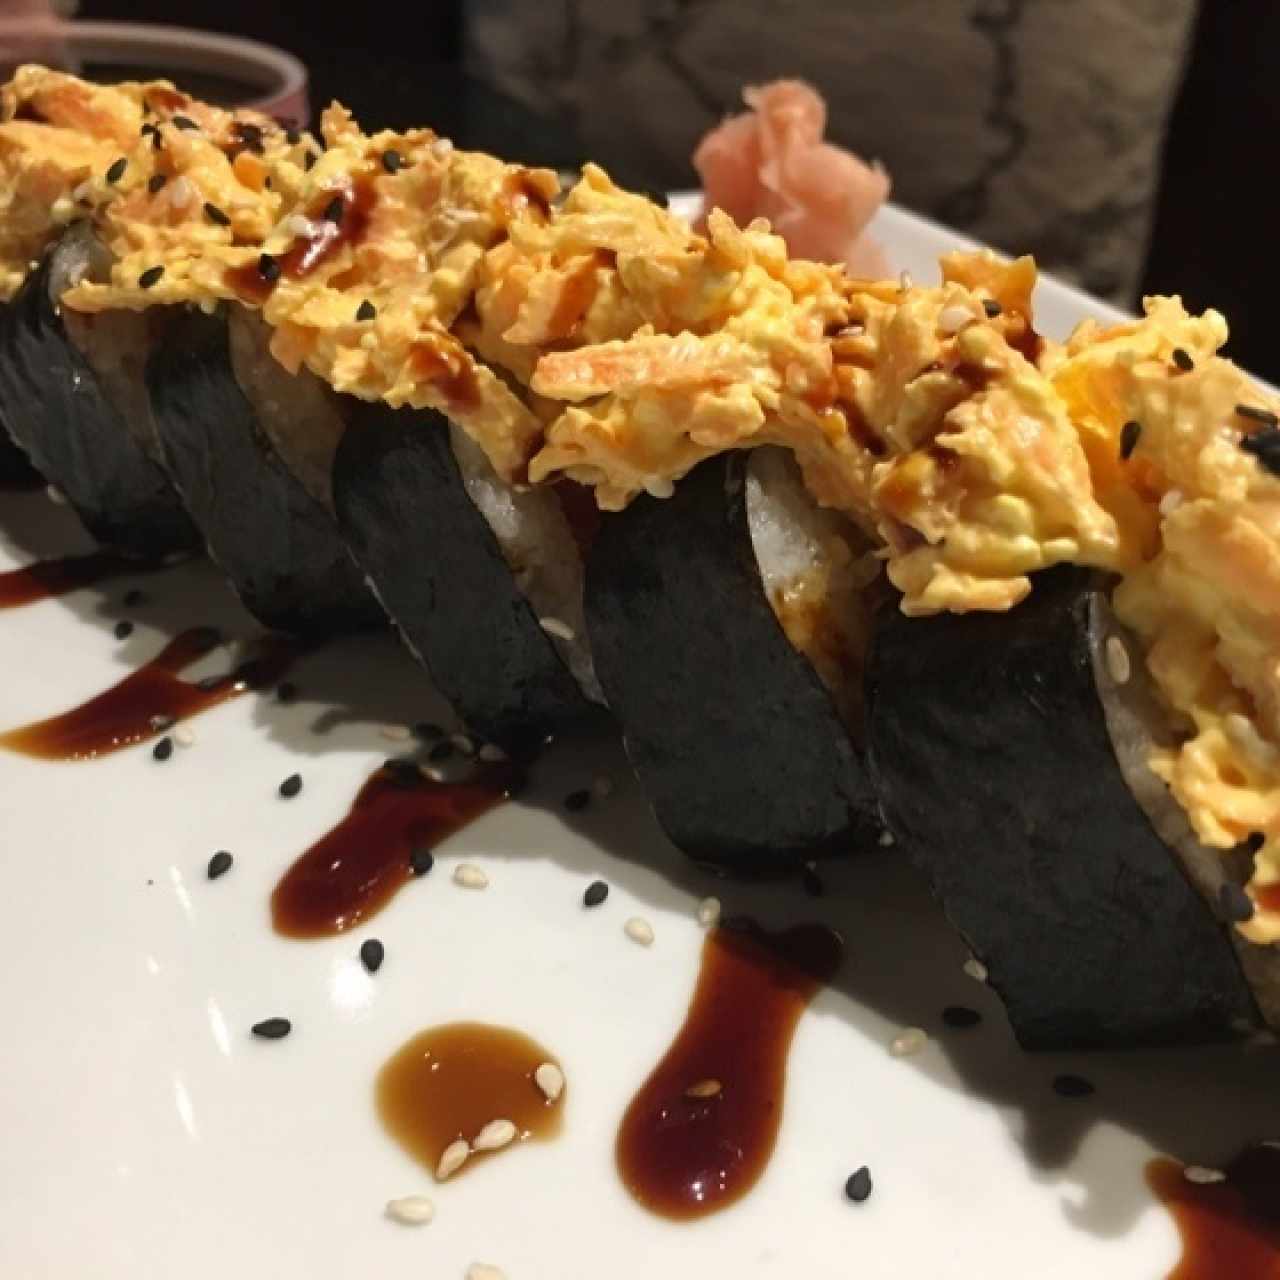 Sushi - Samaki roll